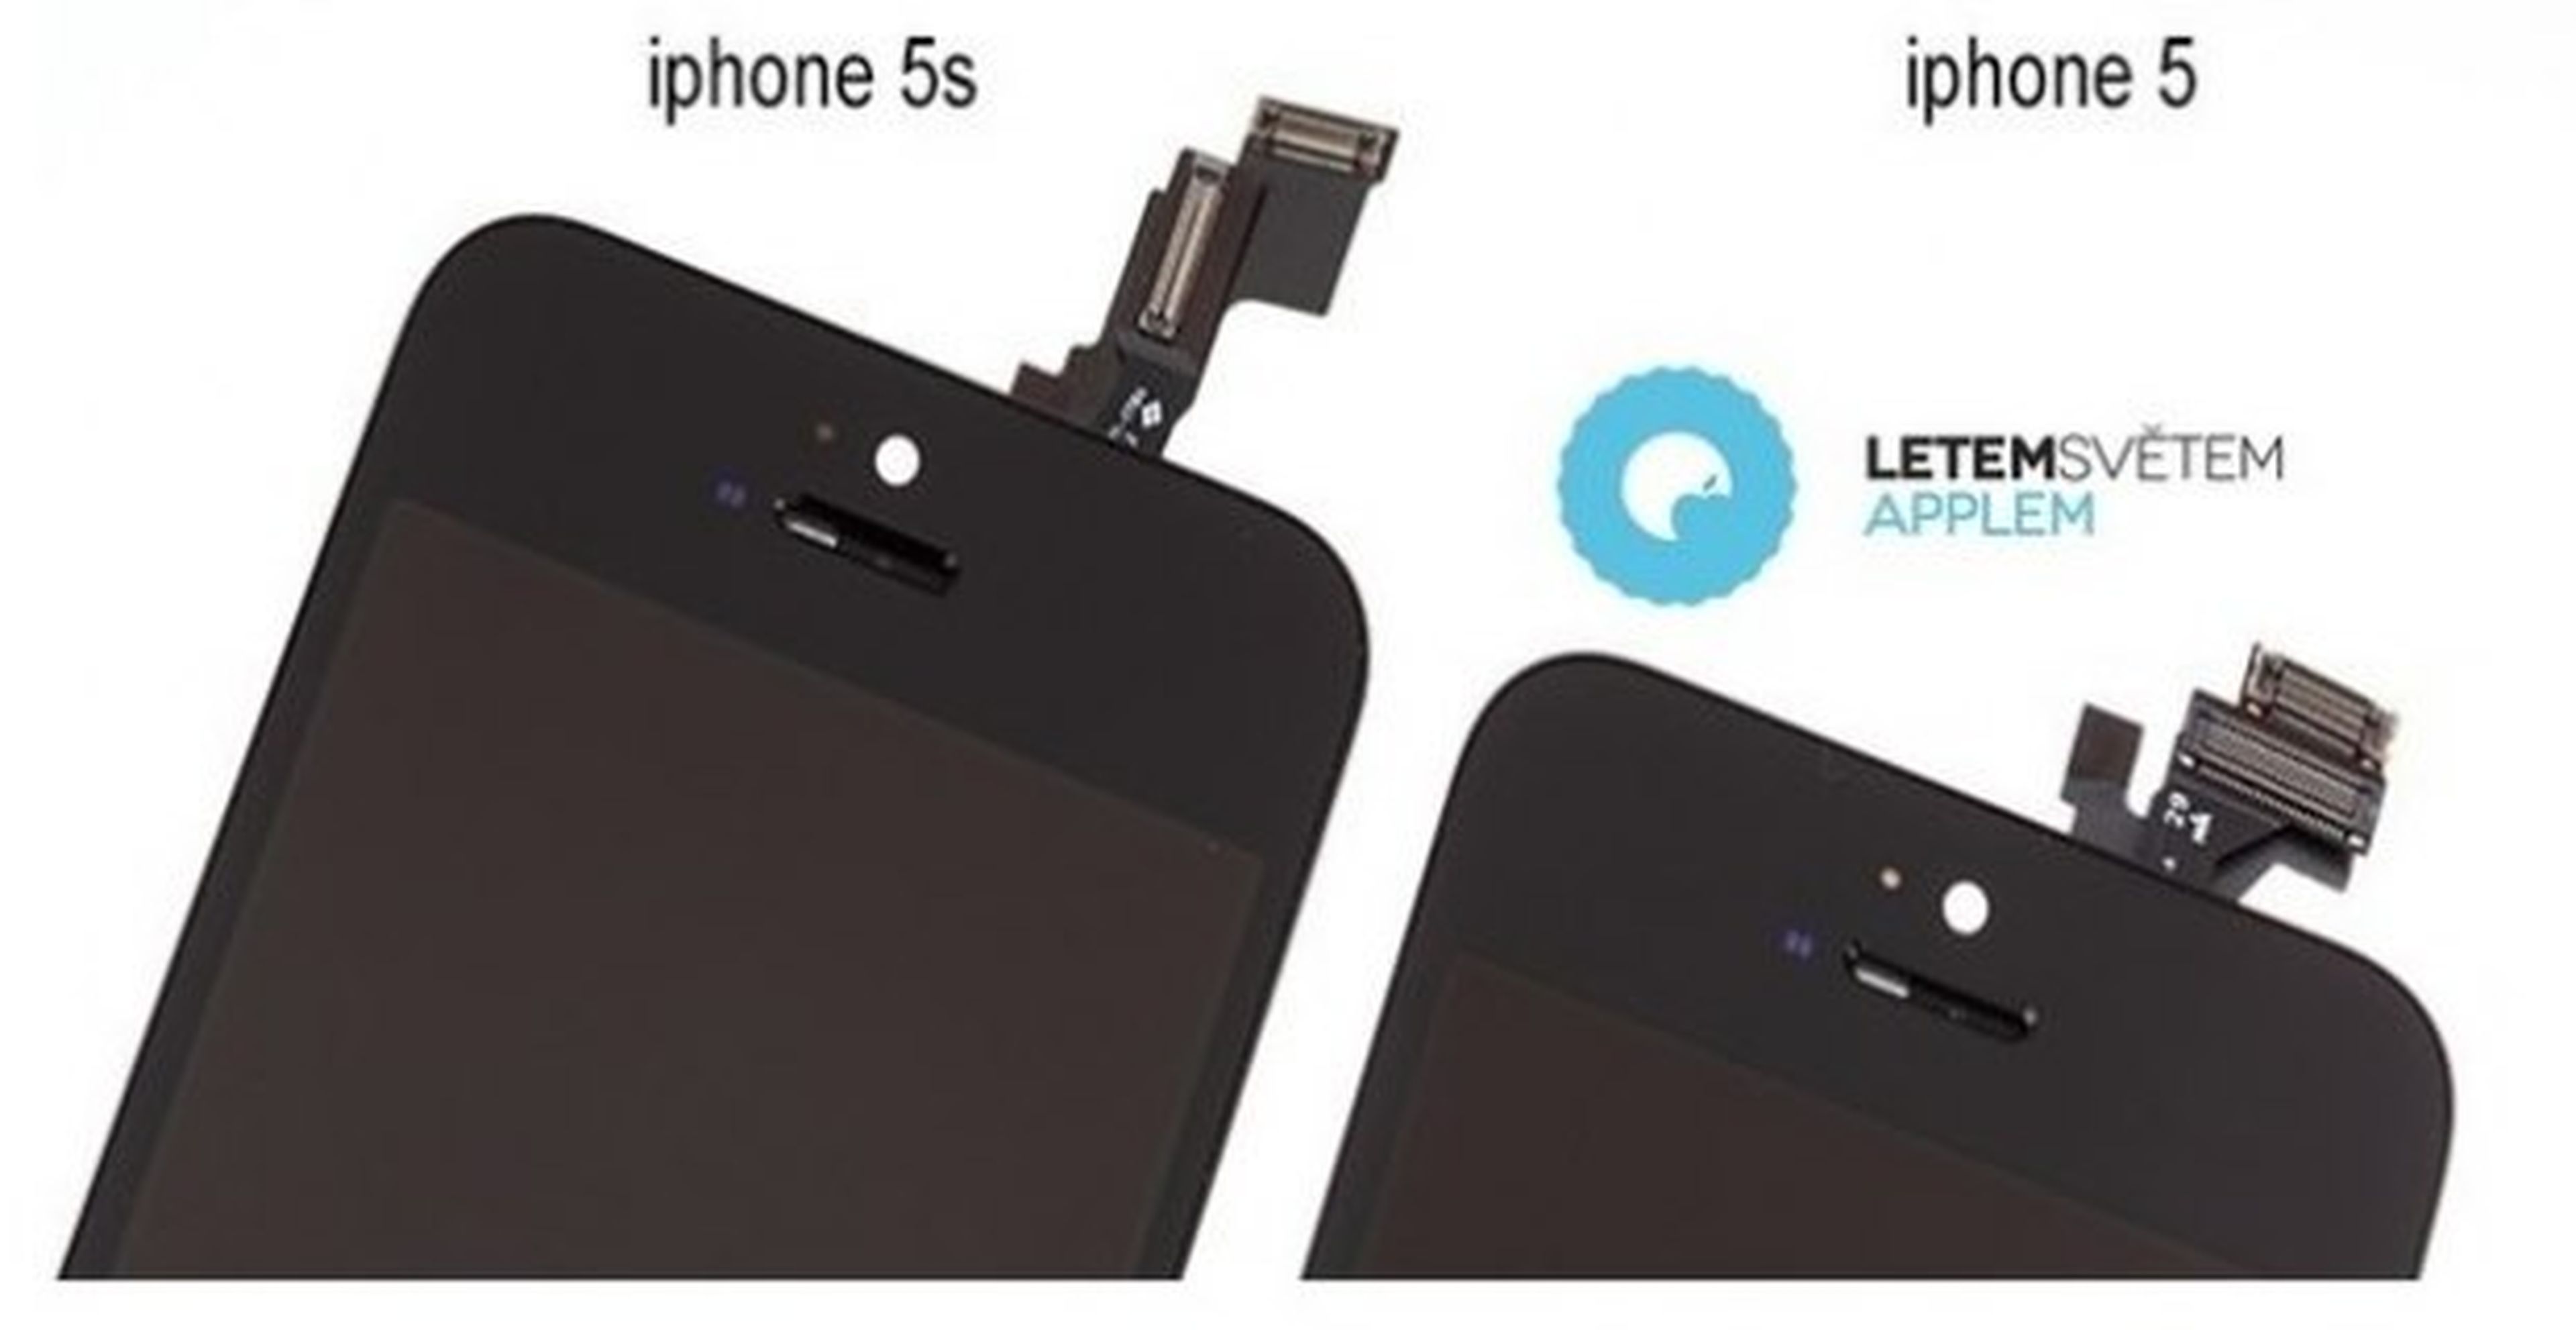 Prototipo de iPhone 5S que incluye doble proyector